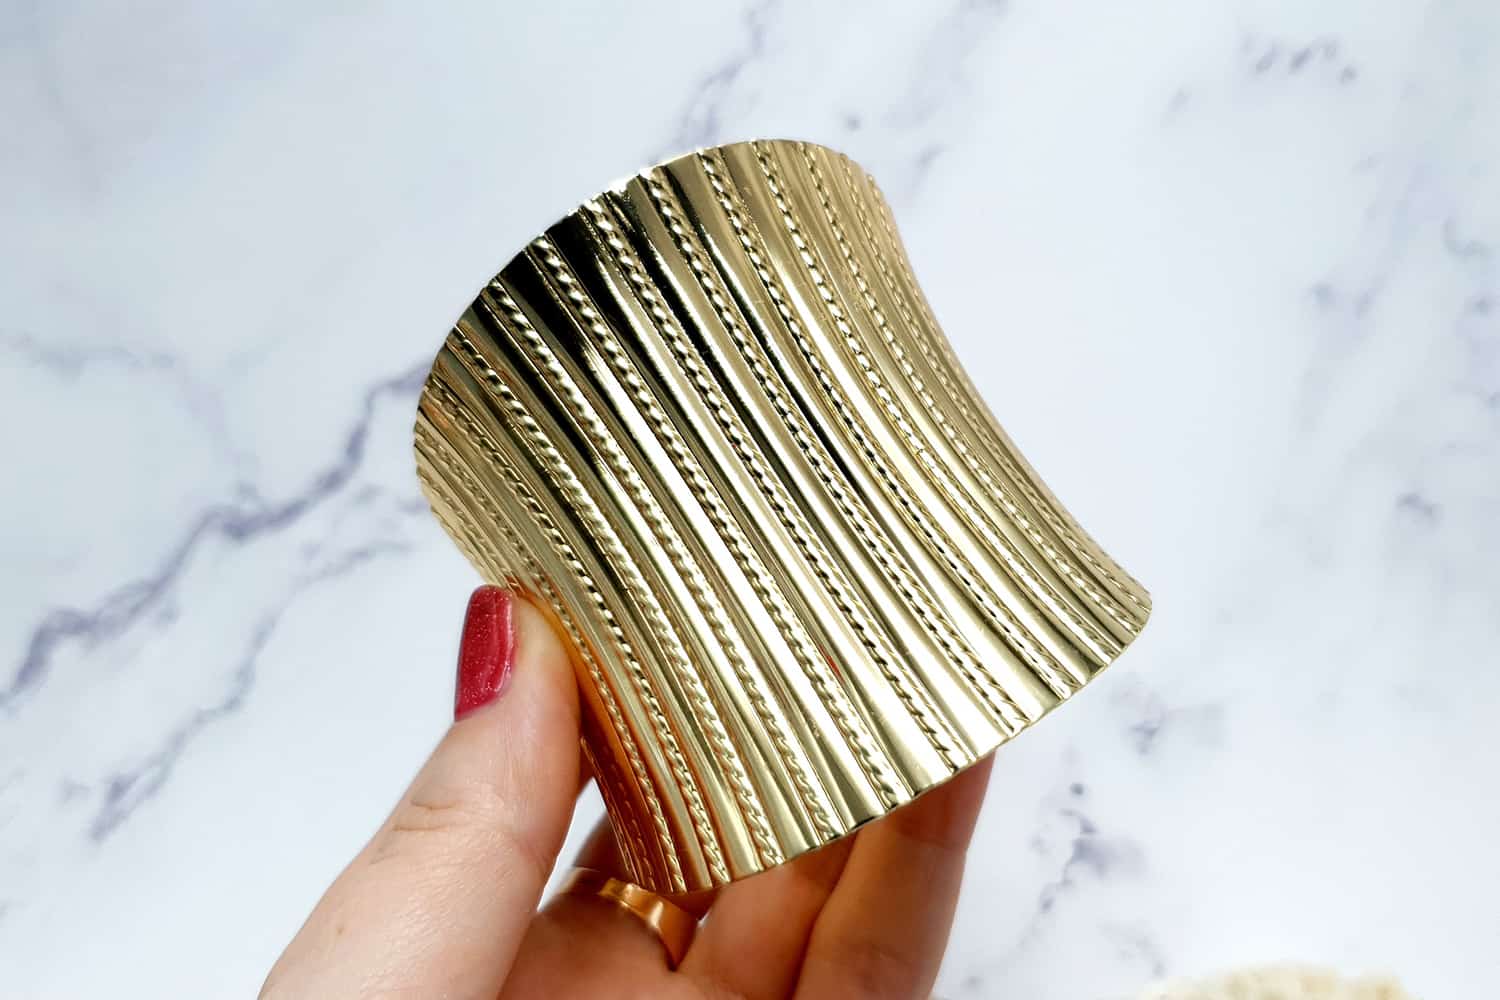 Bracelet metal base stripes pattern, golden color (23411)